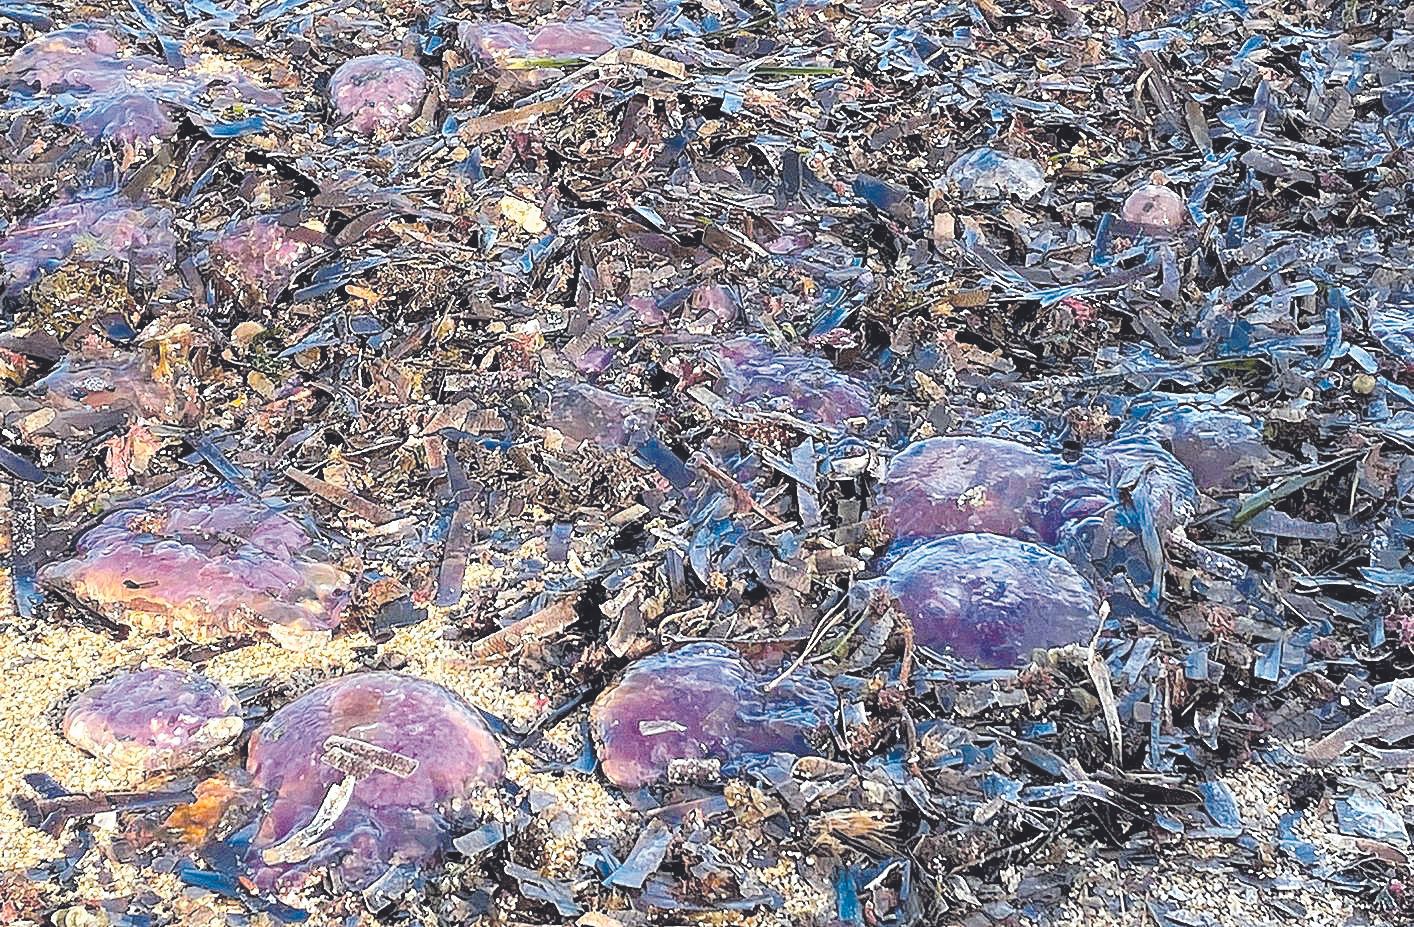 Les meduses apareixen a milers arreu de la Costa Brava